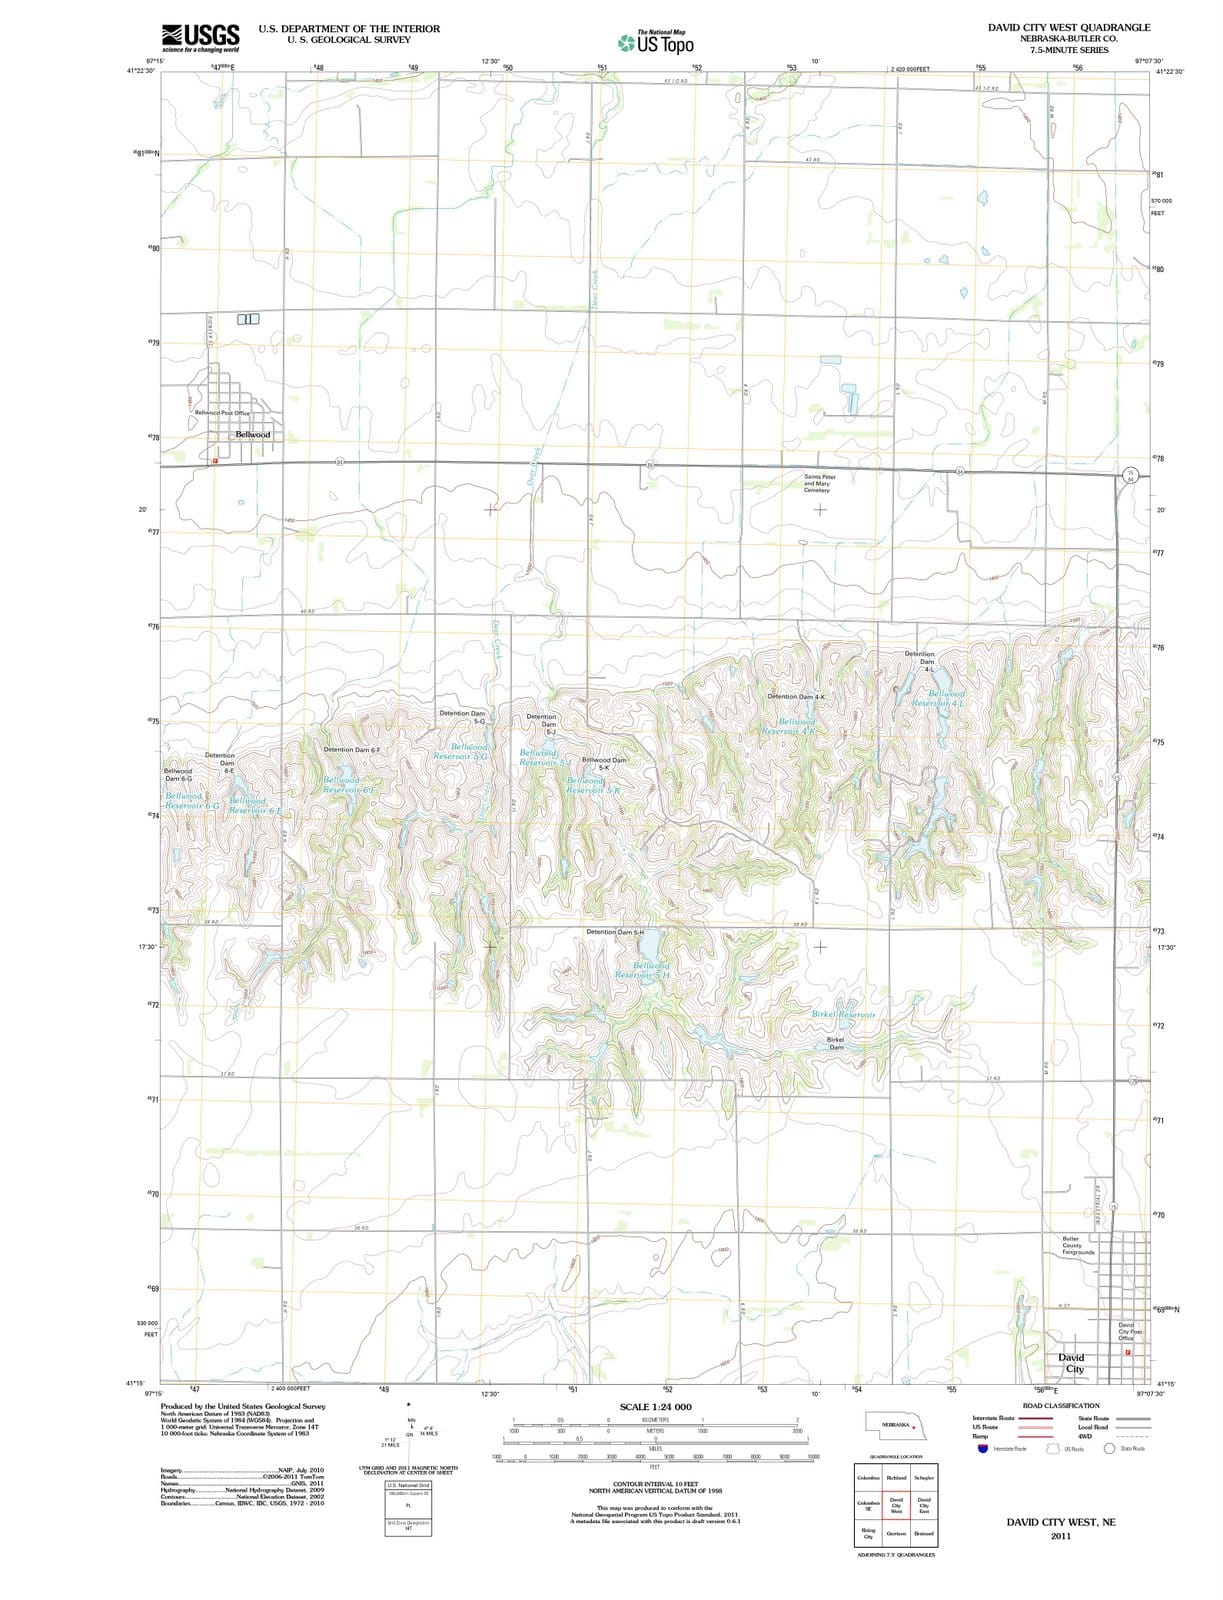 2011 David City West, NE - Nebraska - USGS Topographic Map